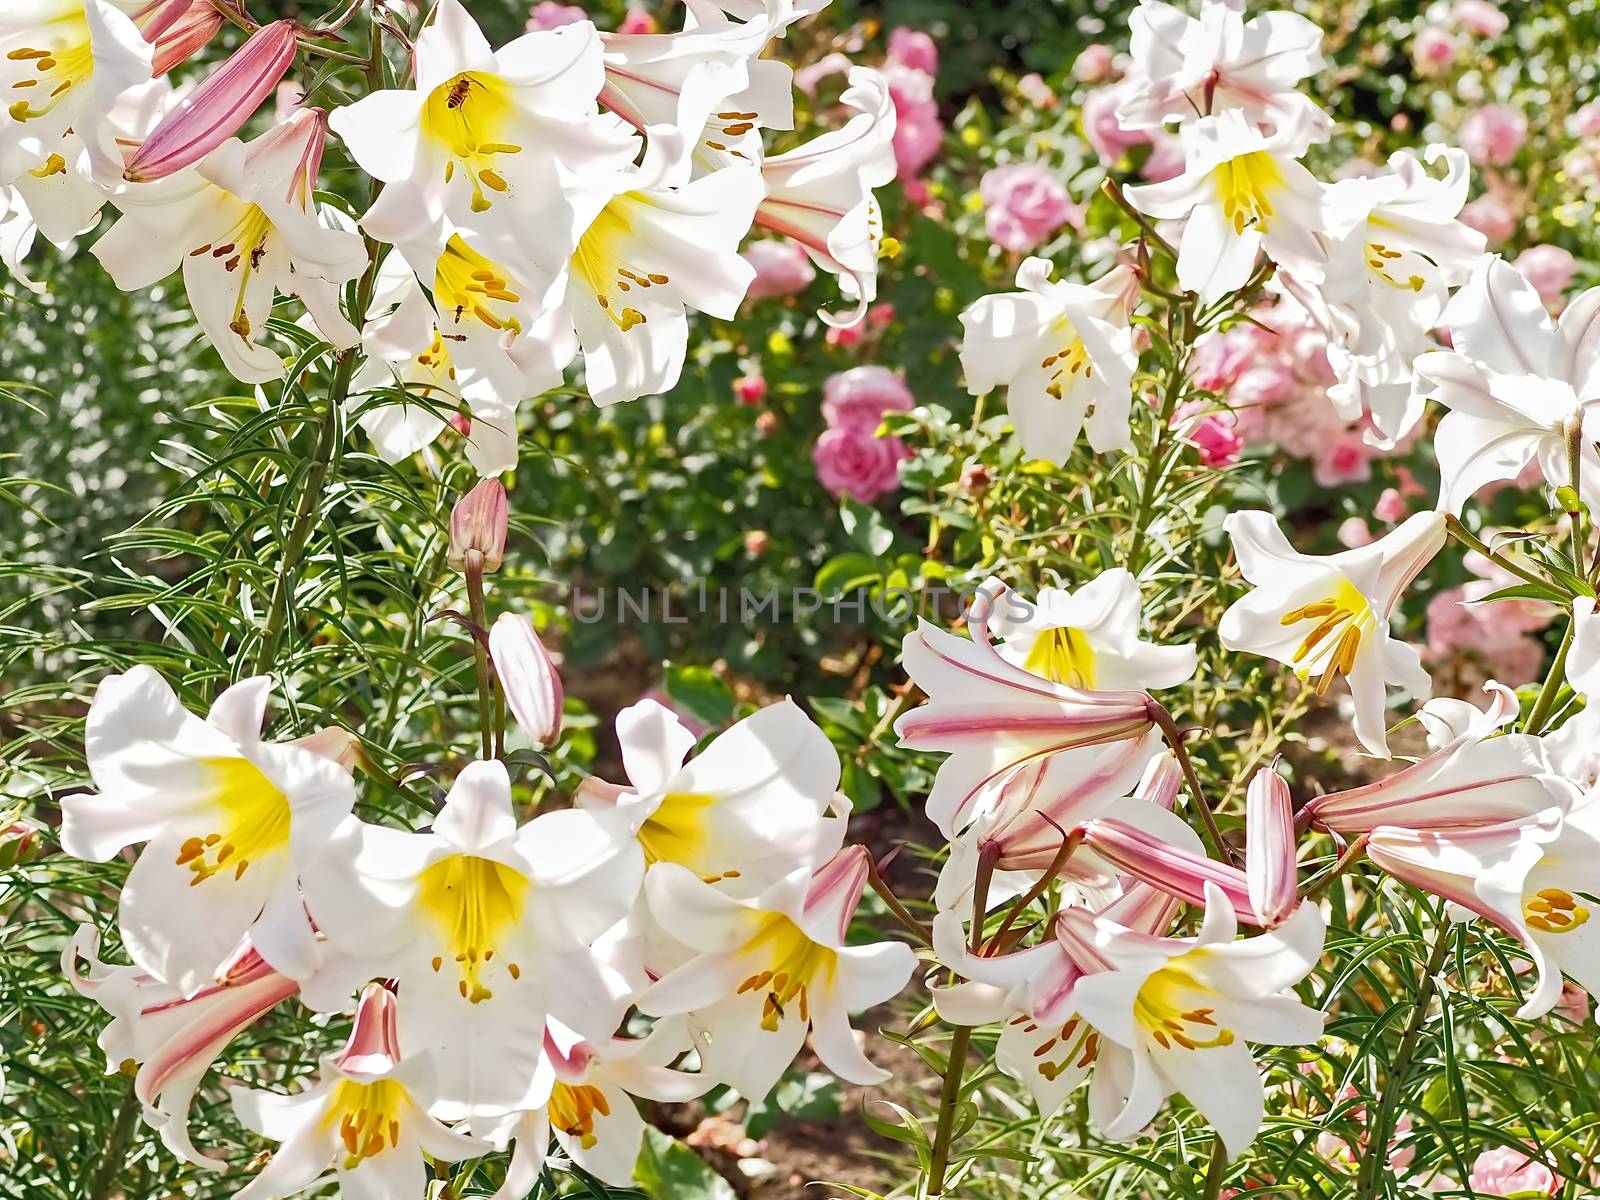 White blooming lilies in a garden by Stimmungsbilder